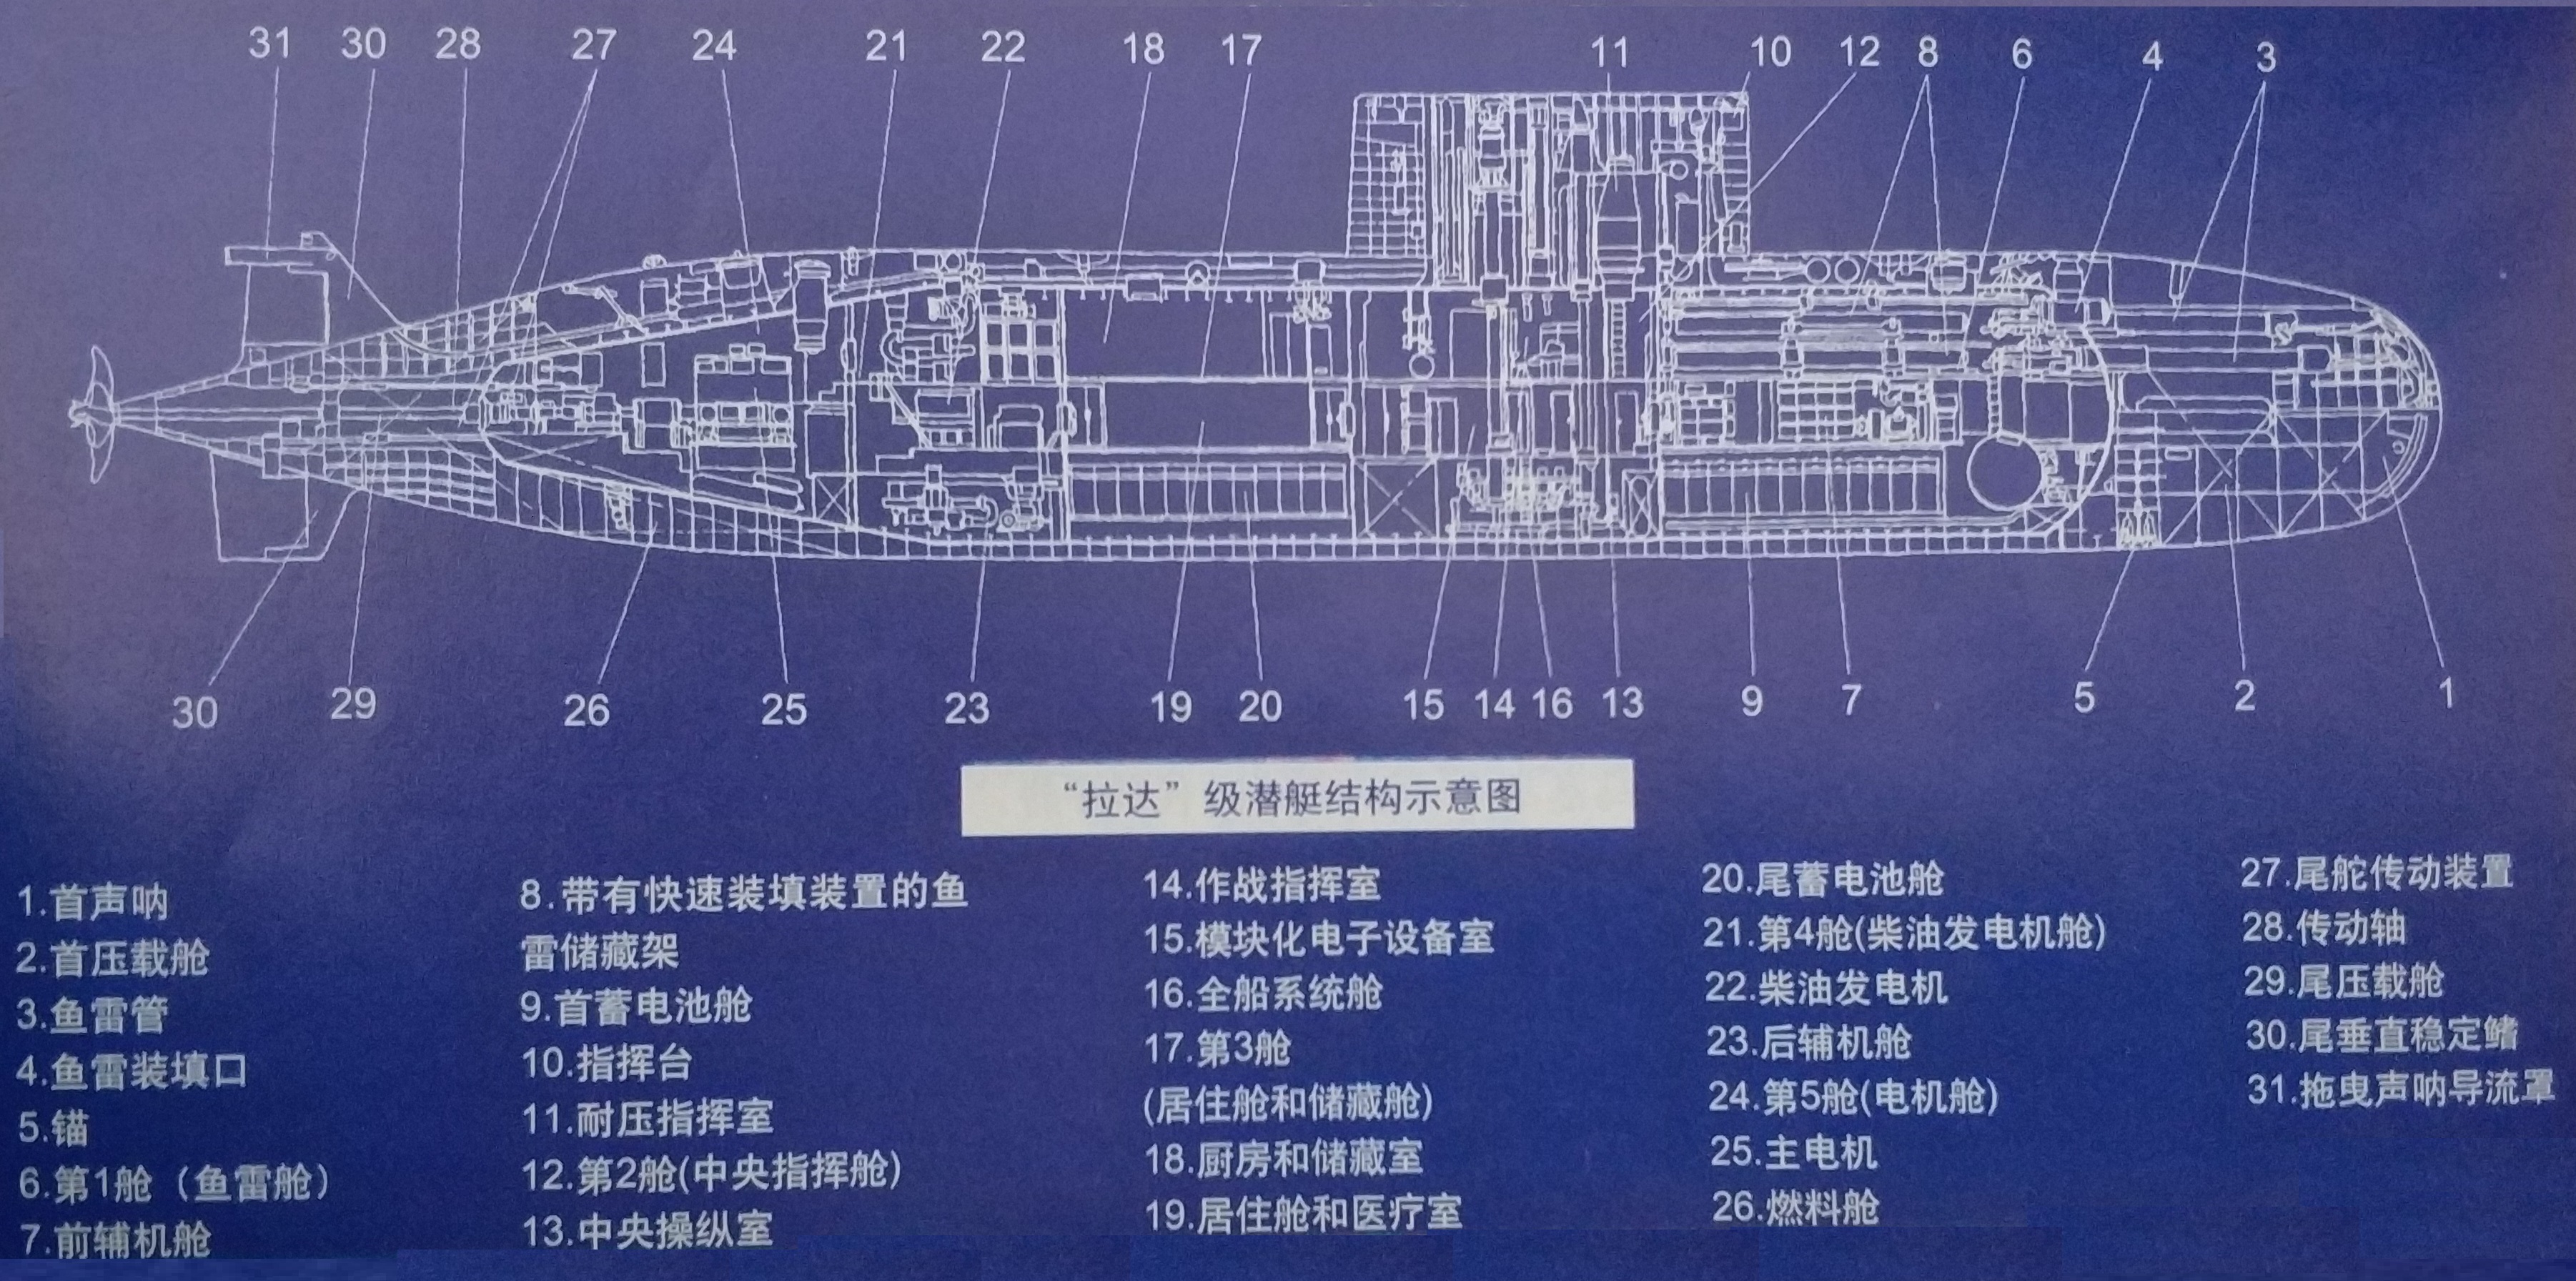 677型潛艇結構示意圖